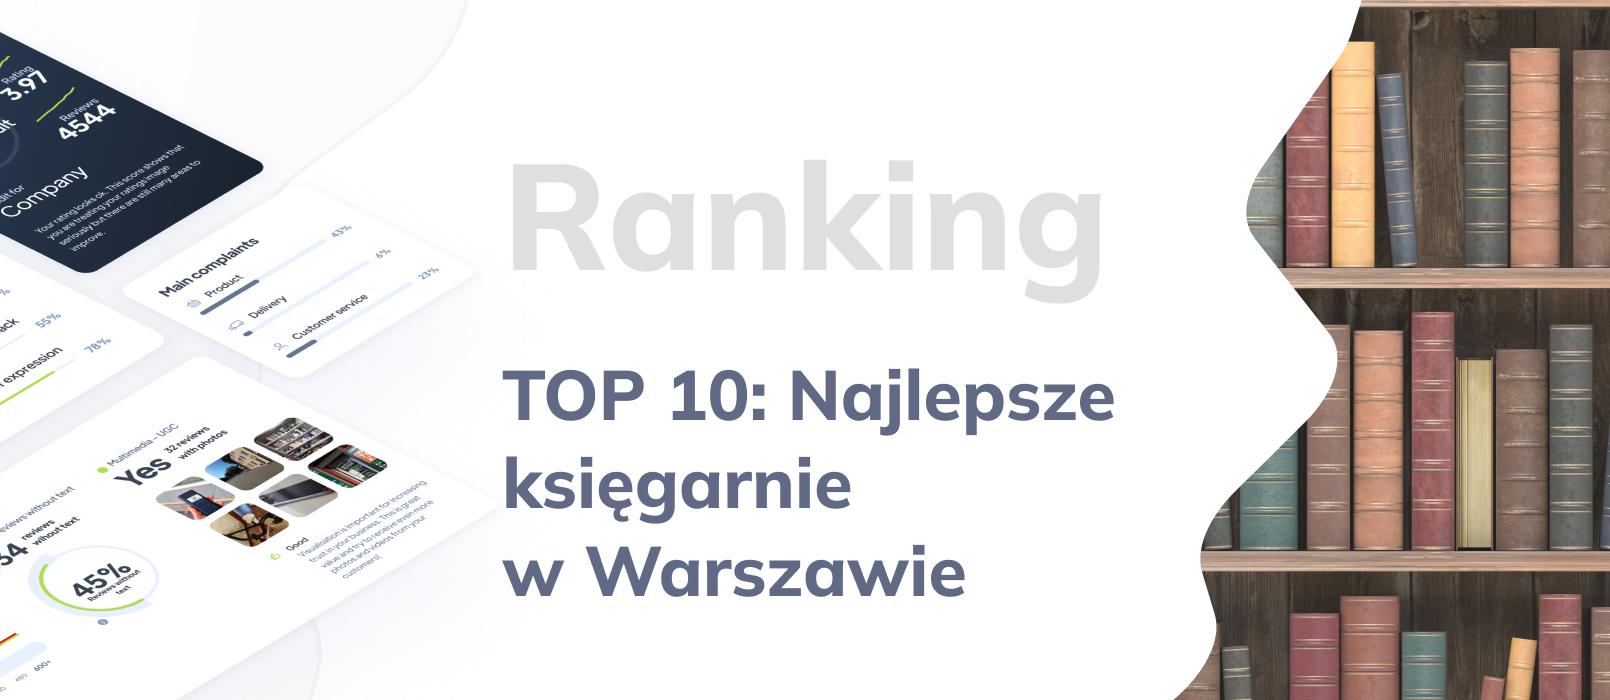 Najlepsze księgarnie w Warszawie – ranking 10 najlepszych księgarni